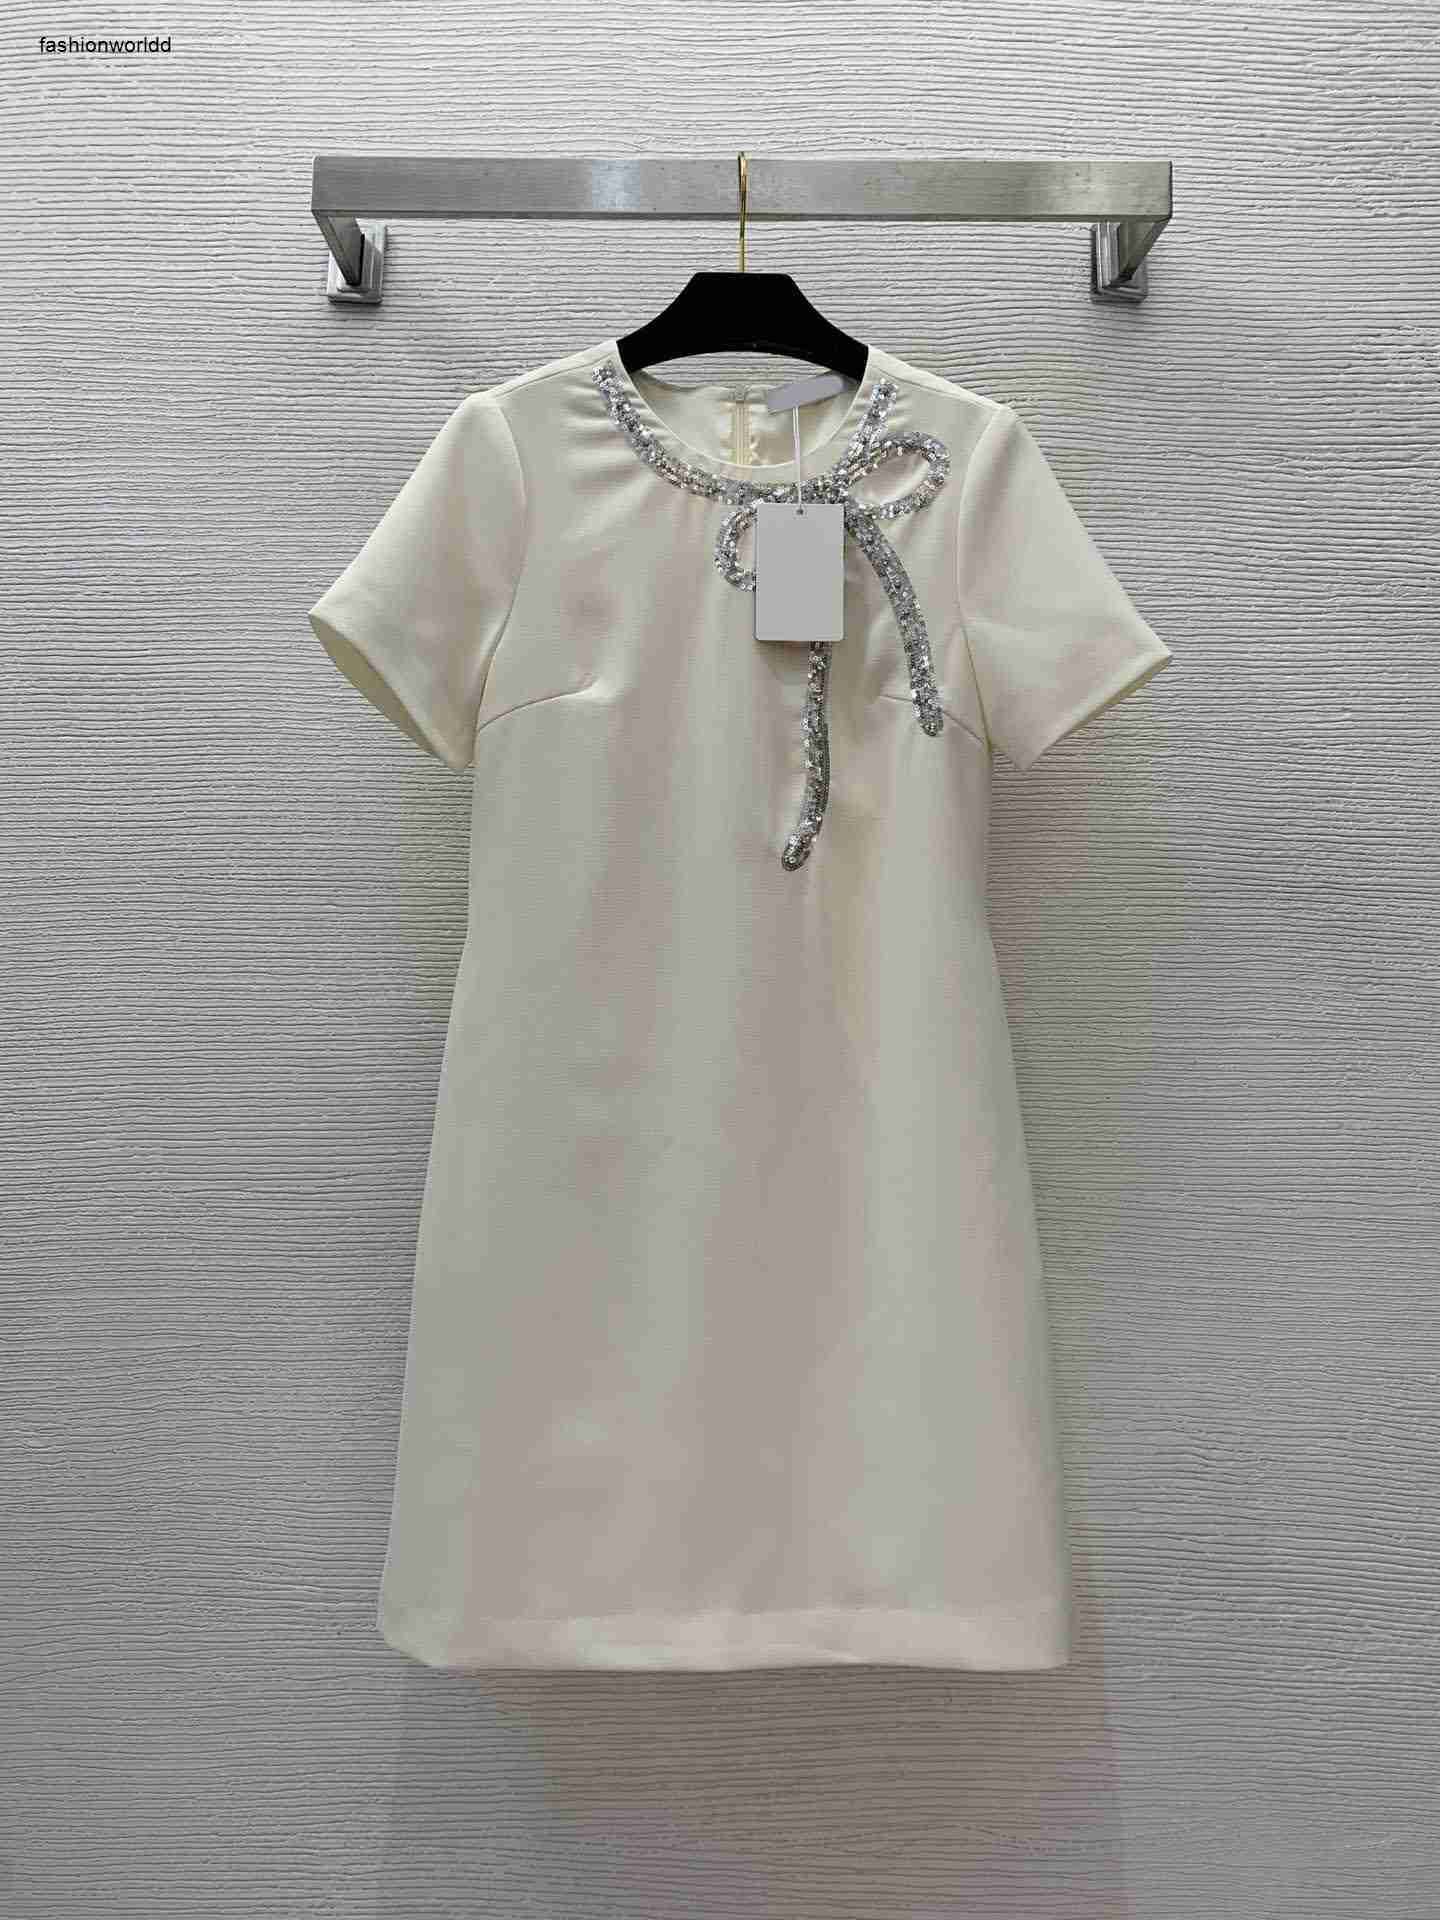 #7-white dress